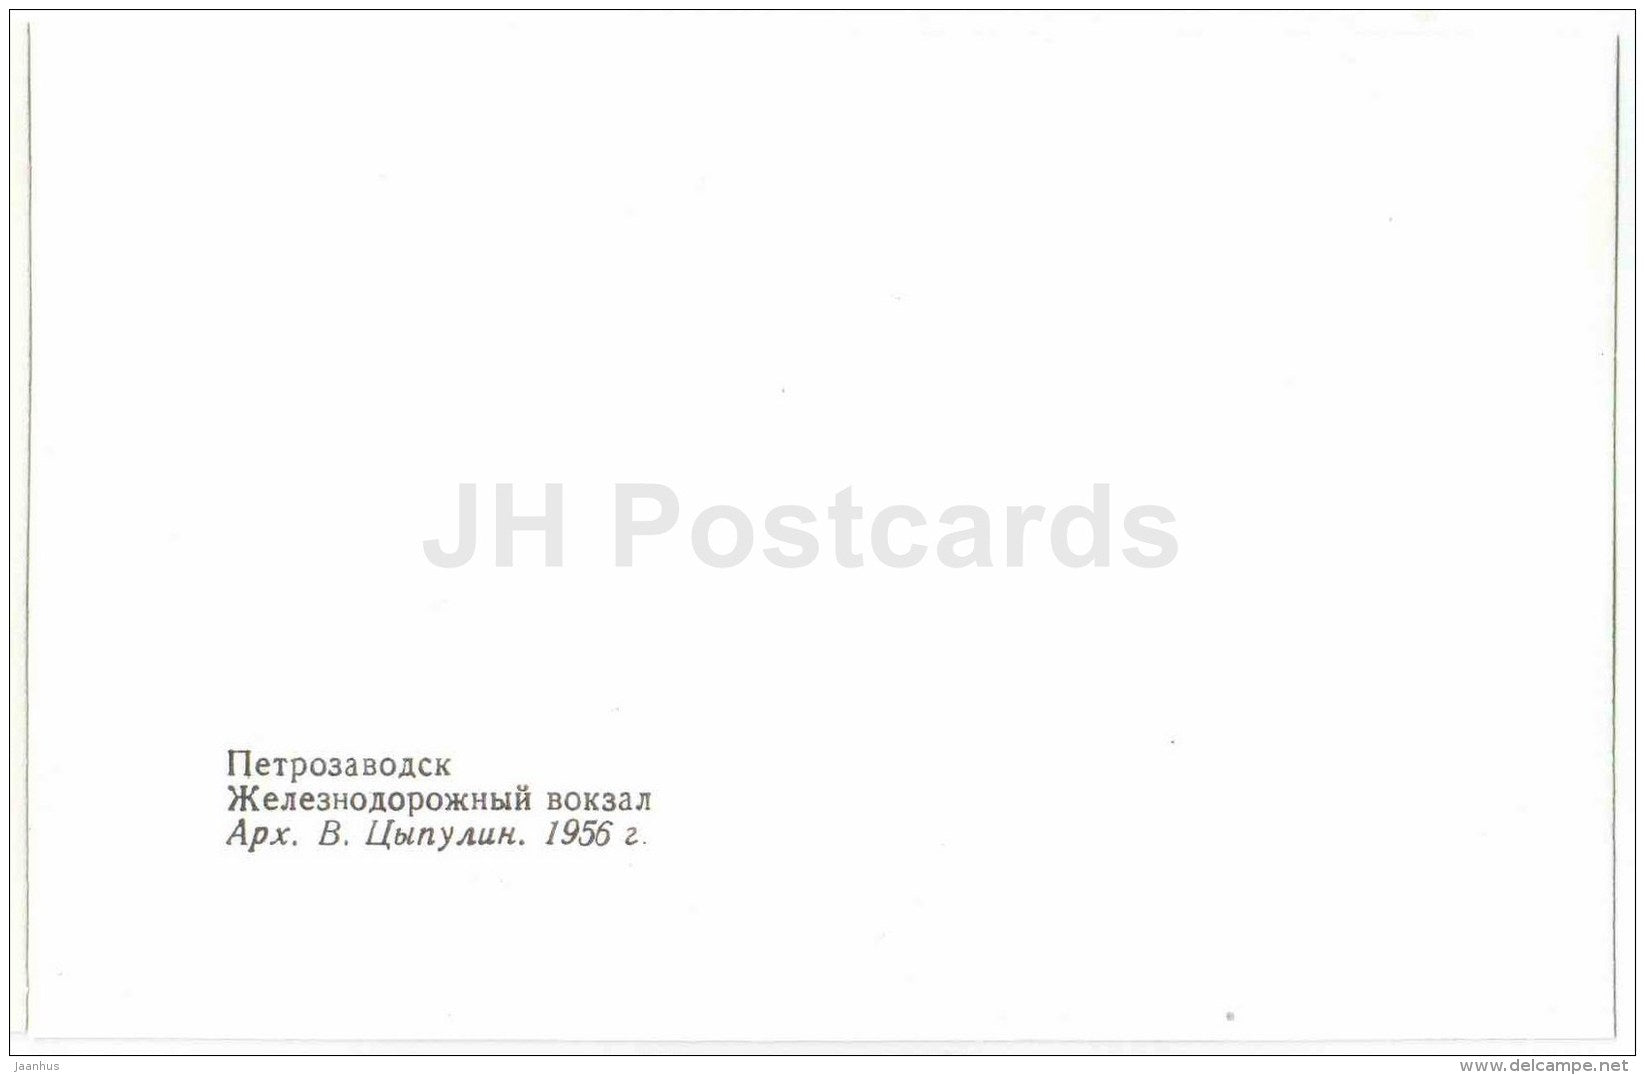 railway station - Petrozavodsk - 1987 - Russia USSR - unused - JH Postcards